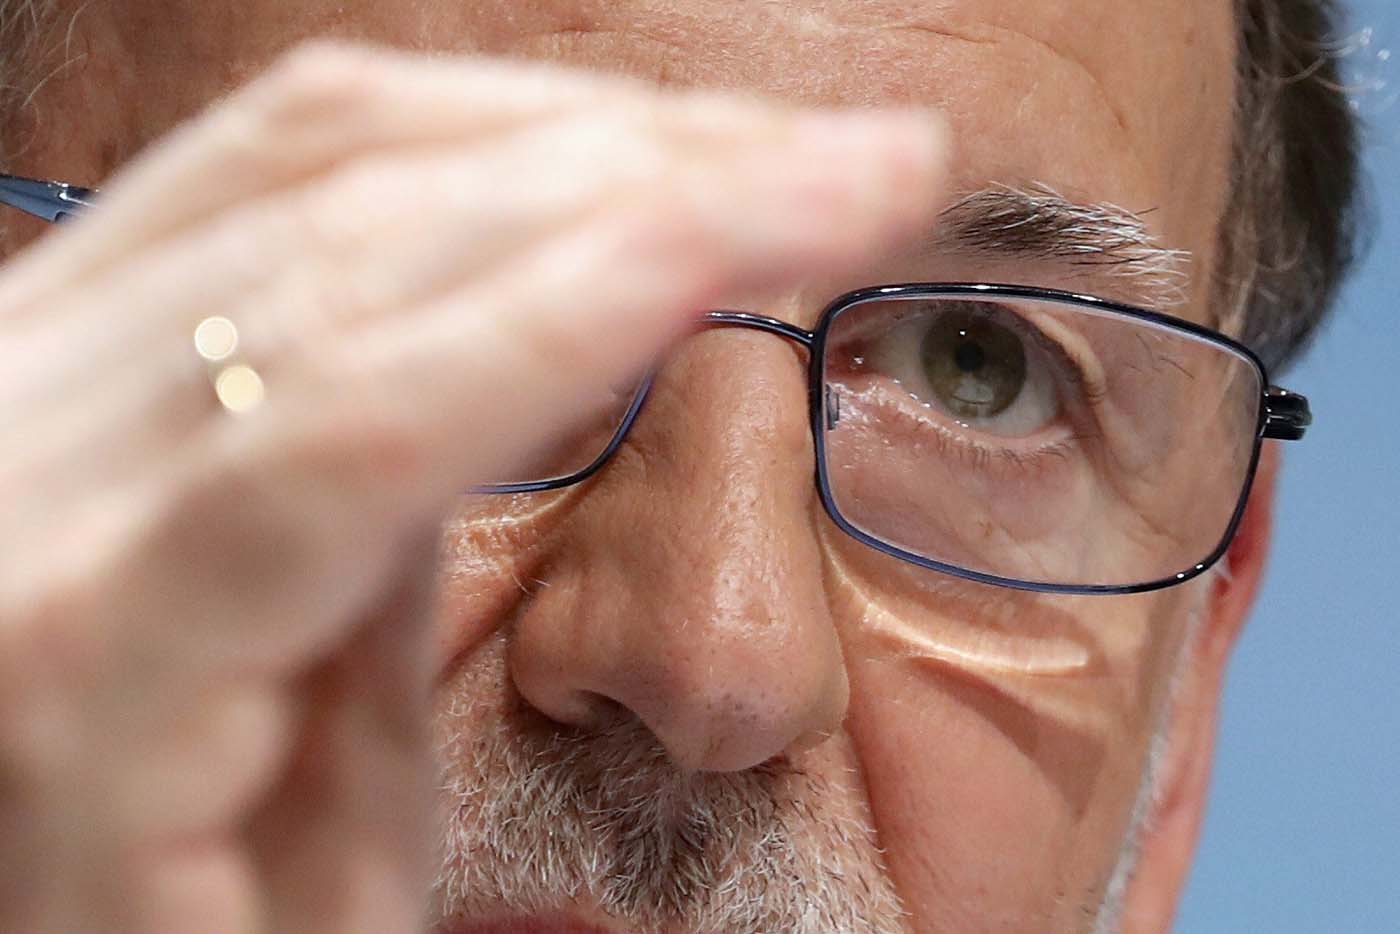 Rajoy acusa a Pablo Iglesias de estar comprado por el gobierno de Maduro